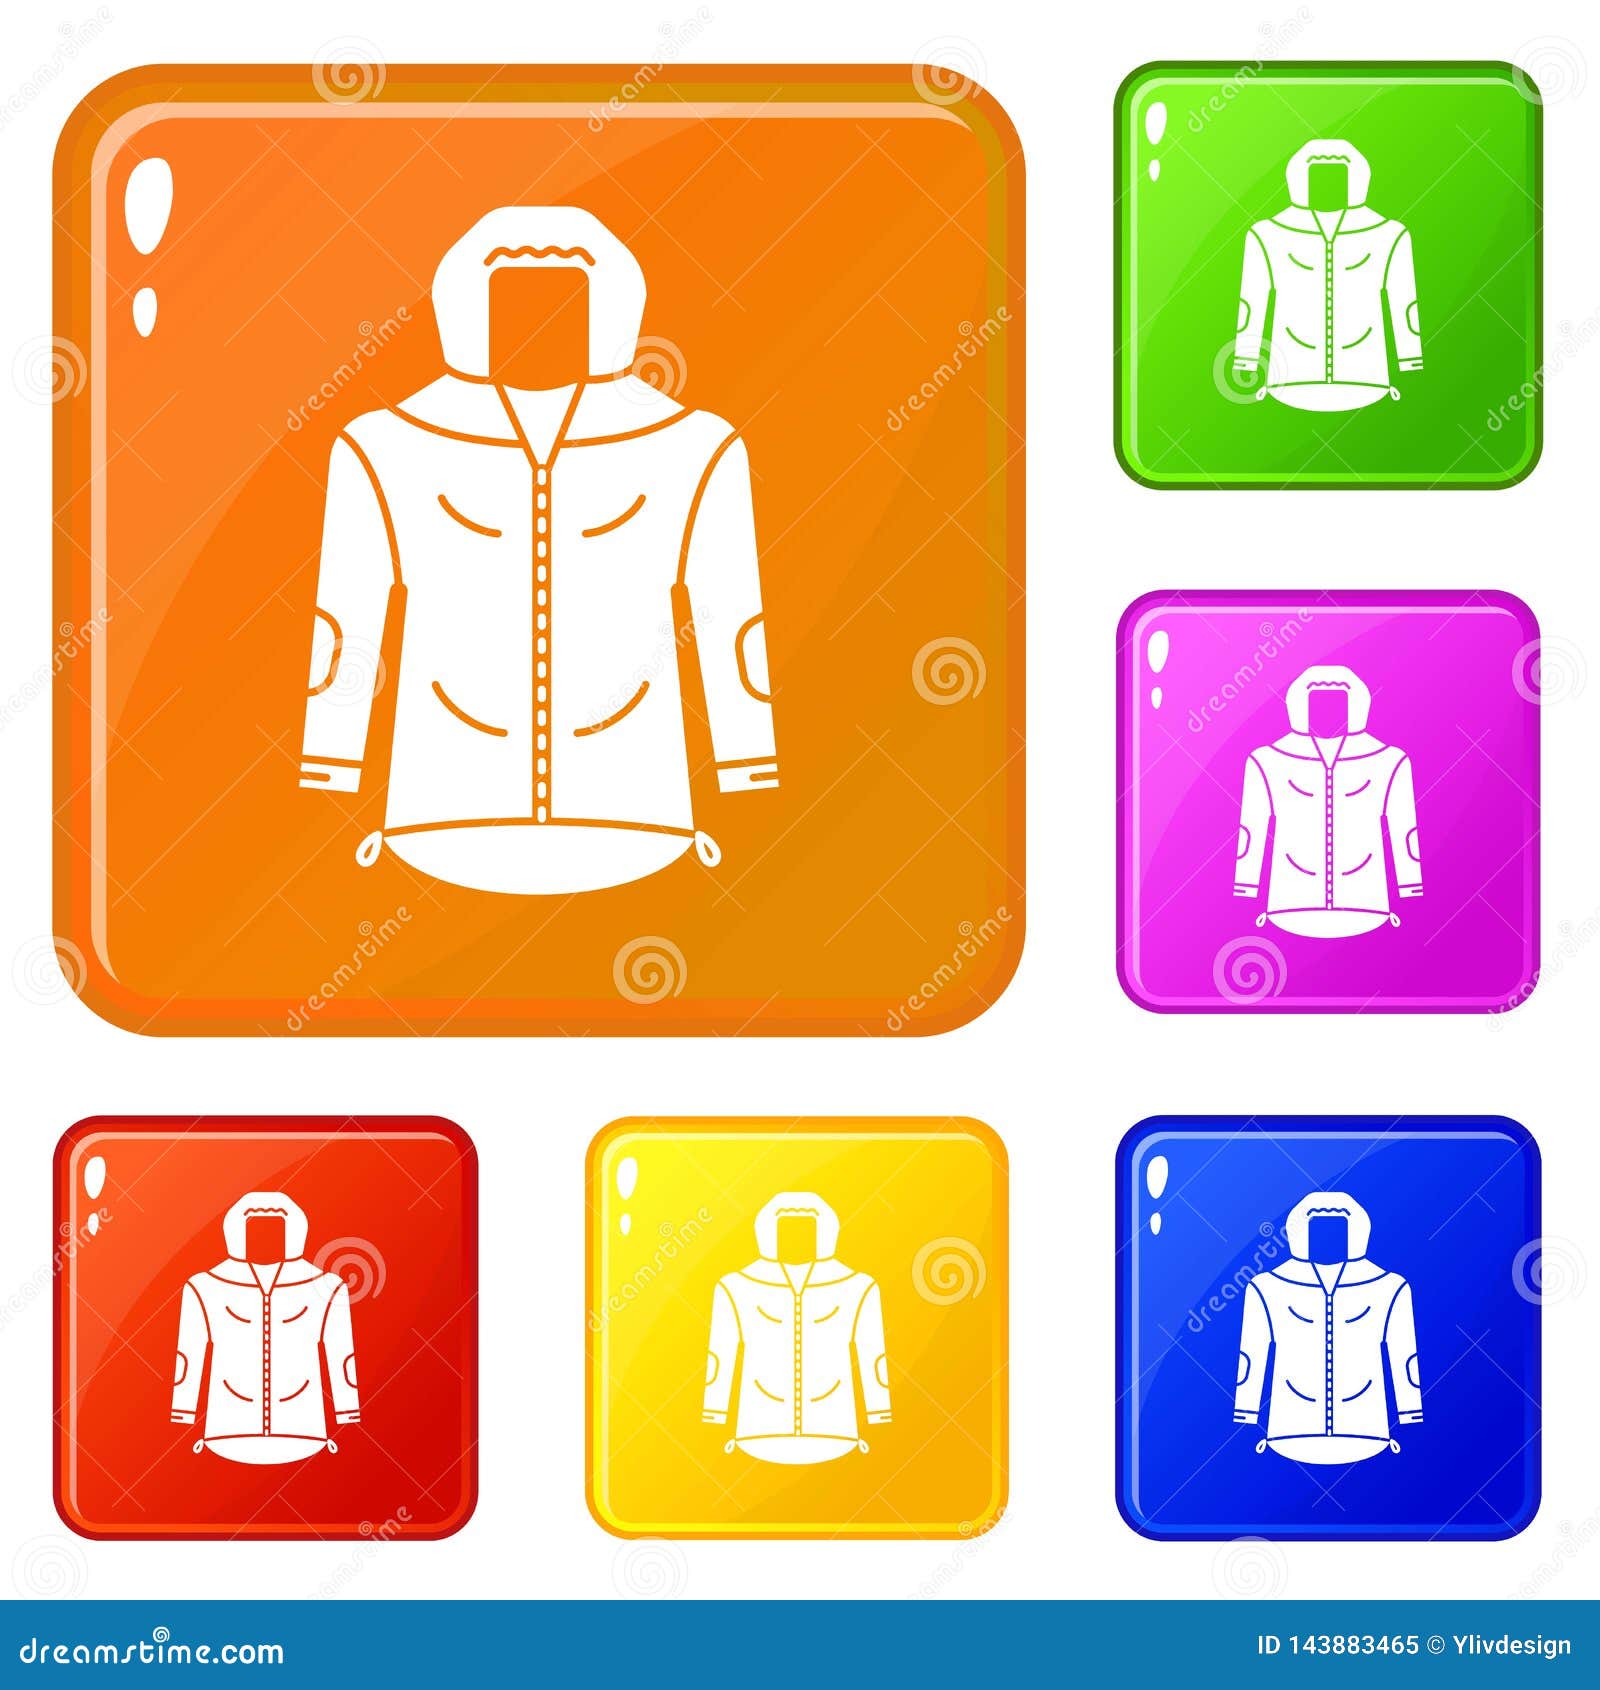 travel jacket icon